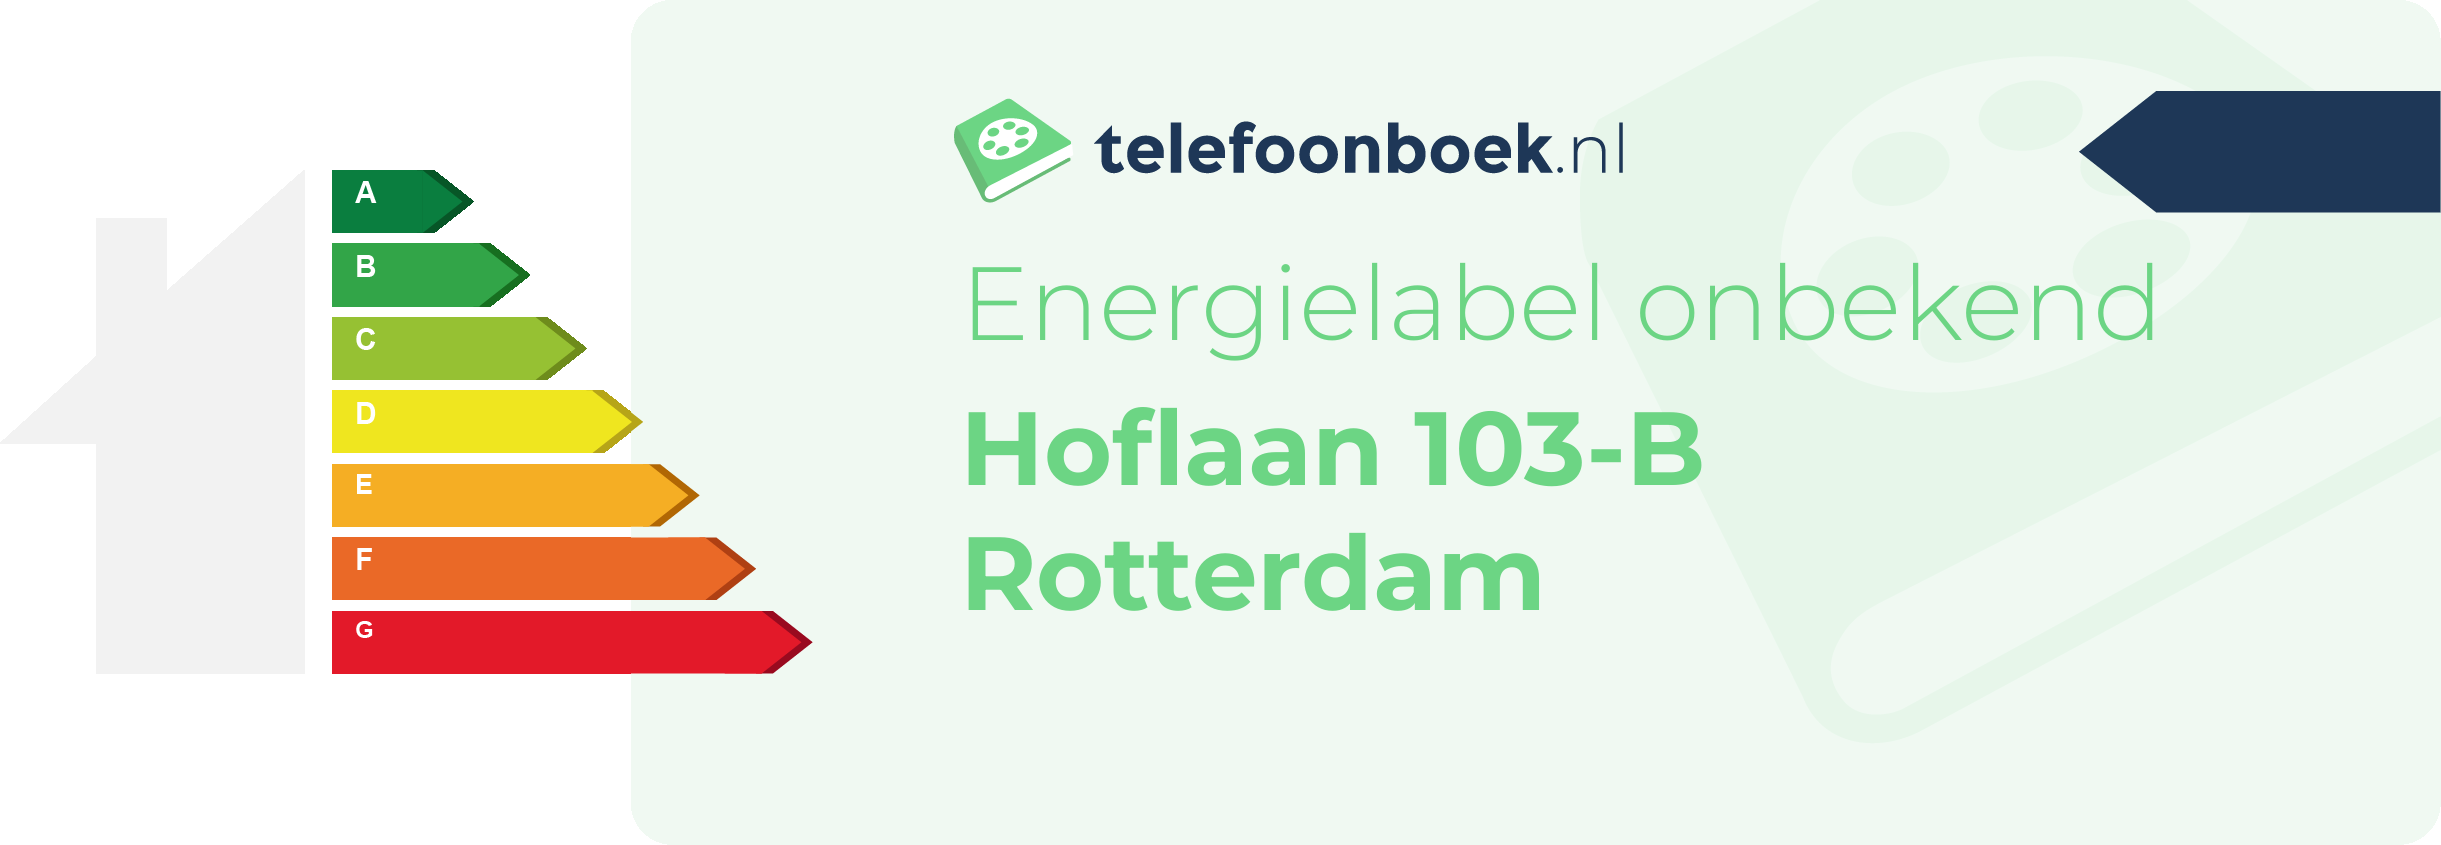 Energielabel Hoflaan 103-B Rotterdam